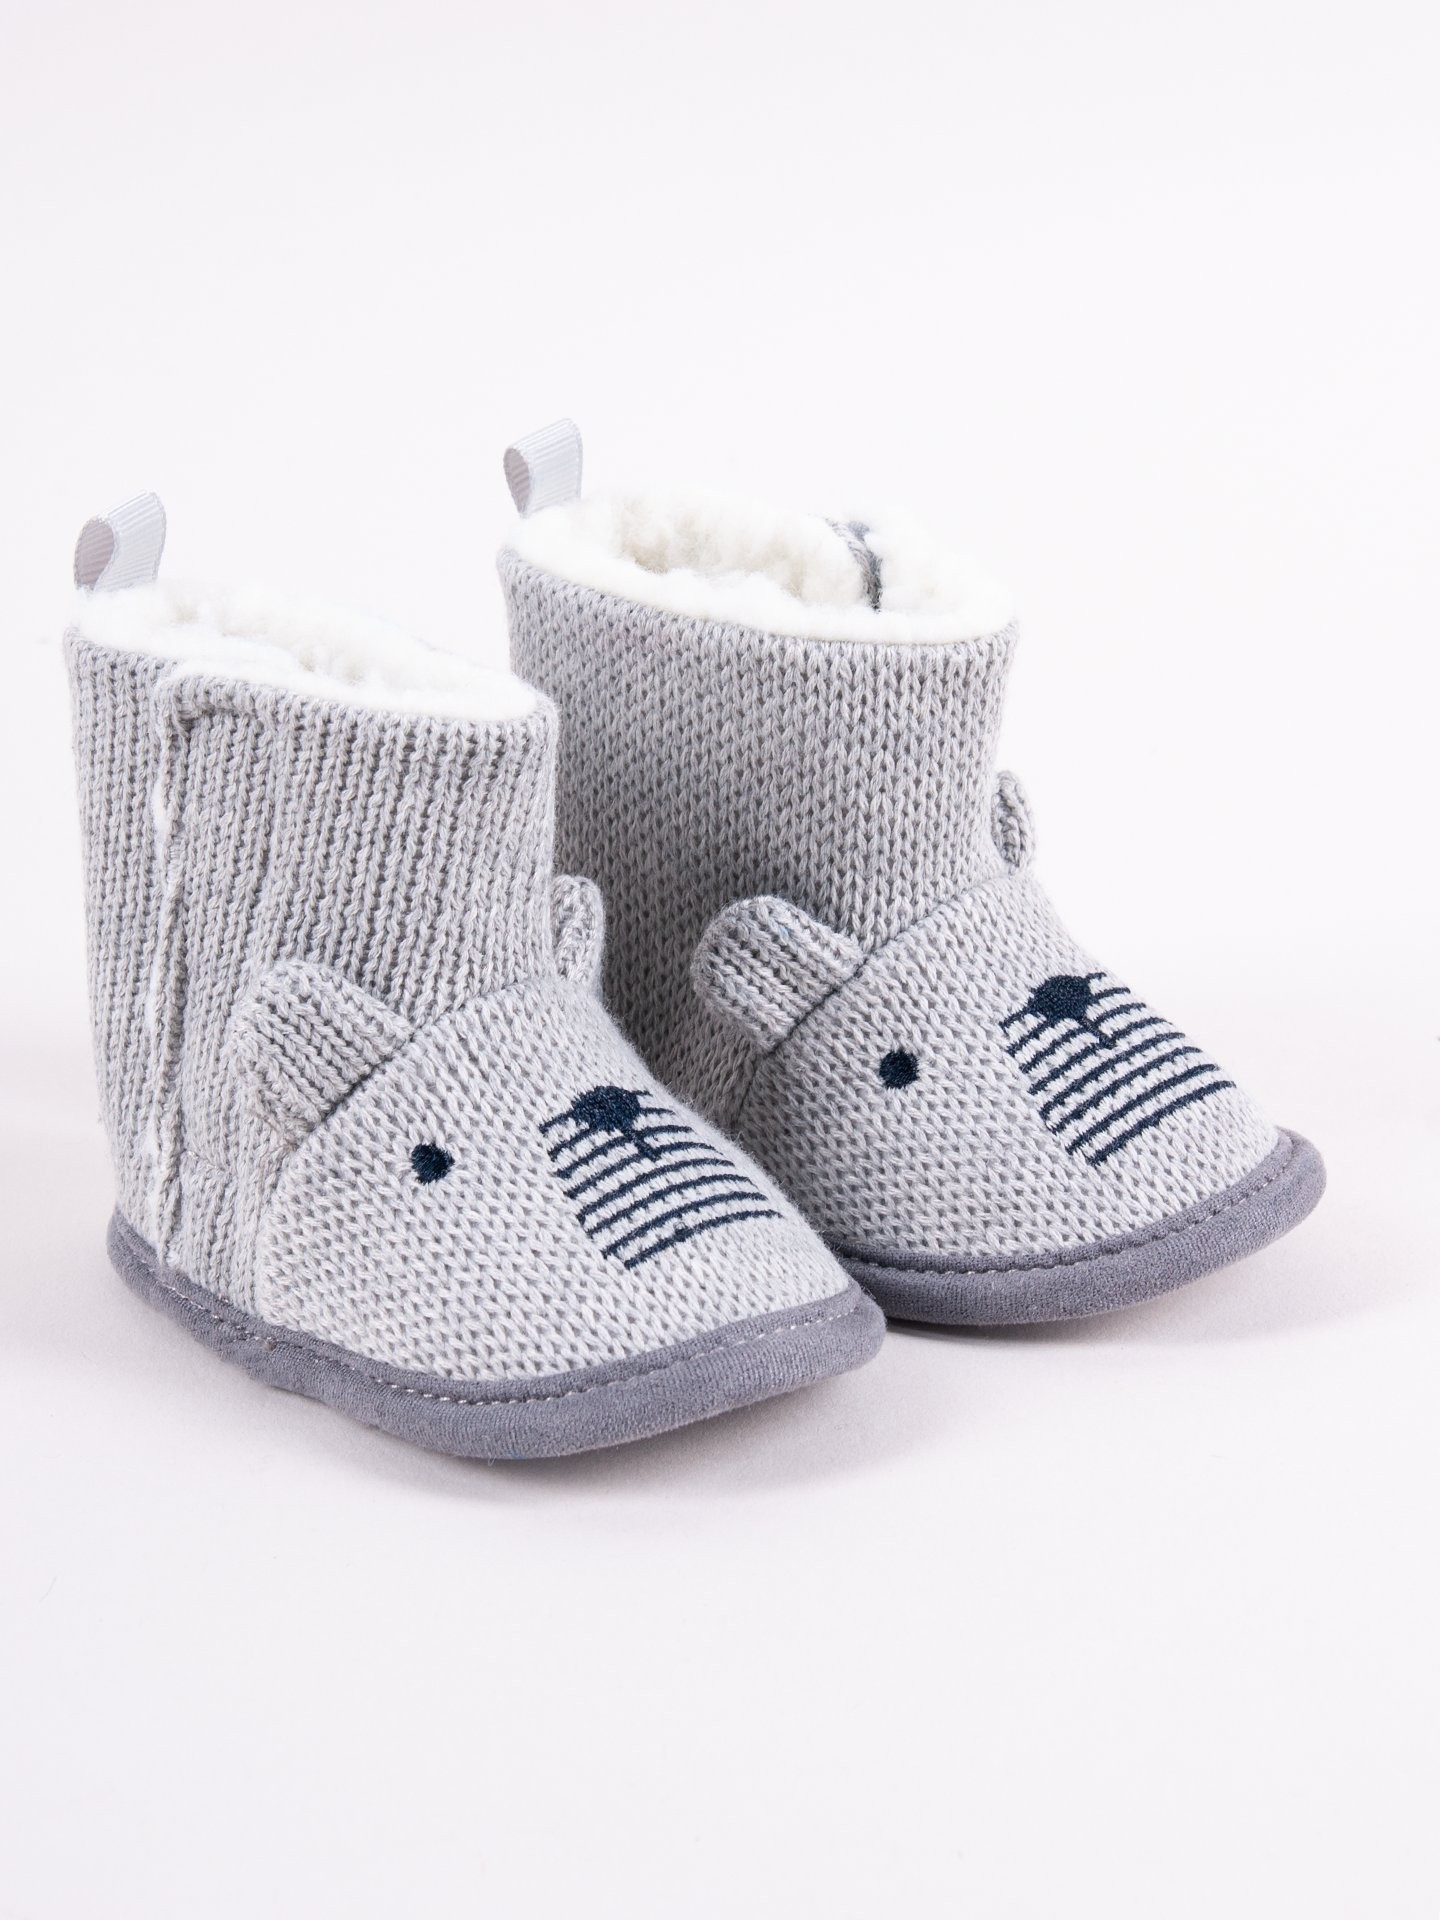 Yoclub Chlapecké boty na suchý zip OBO-0196C-6600 Grey 0-6 měsíců